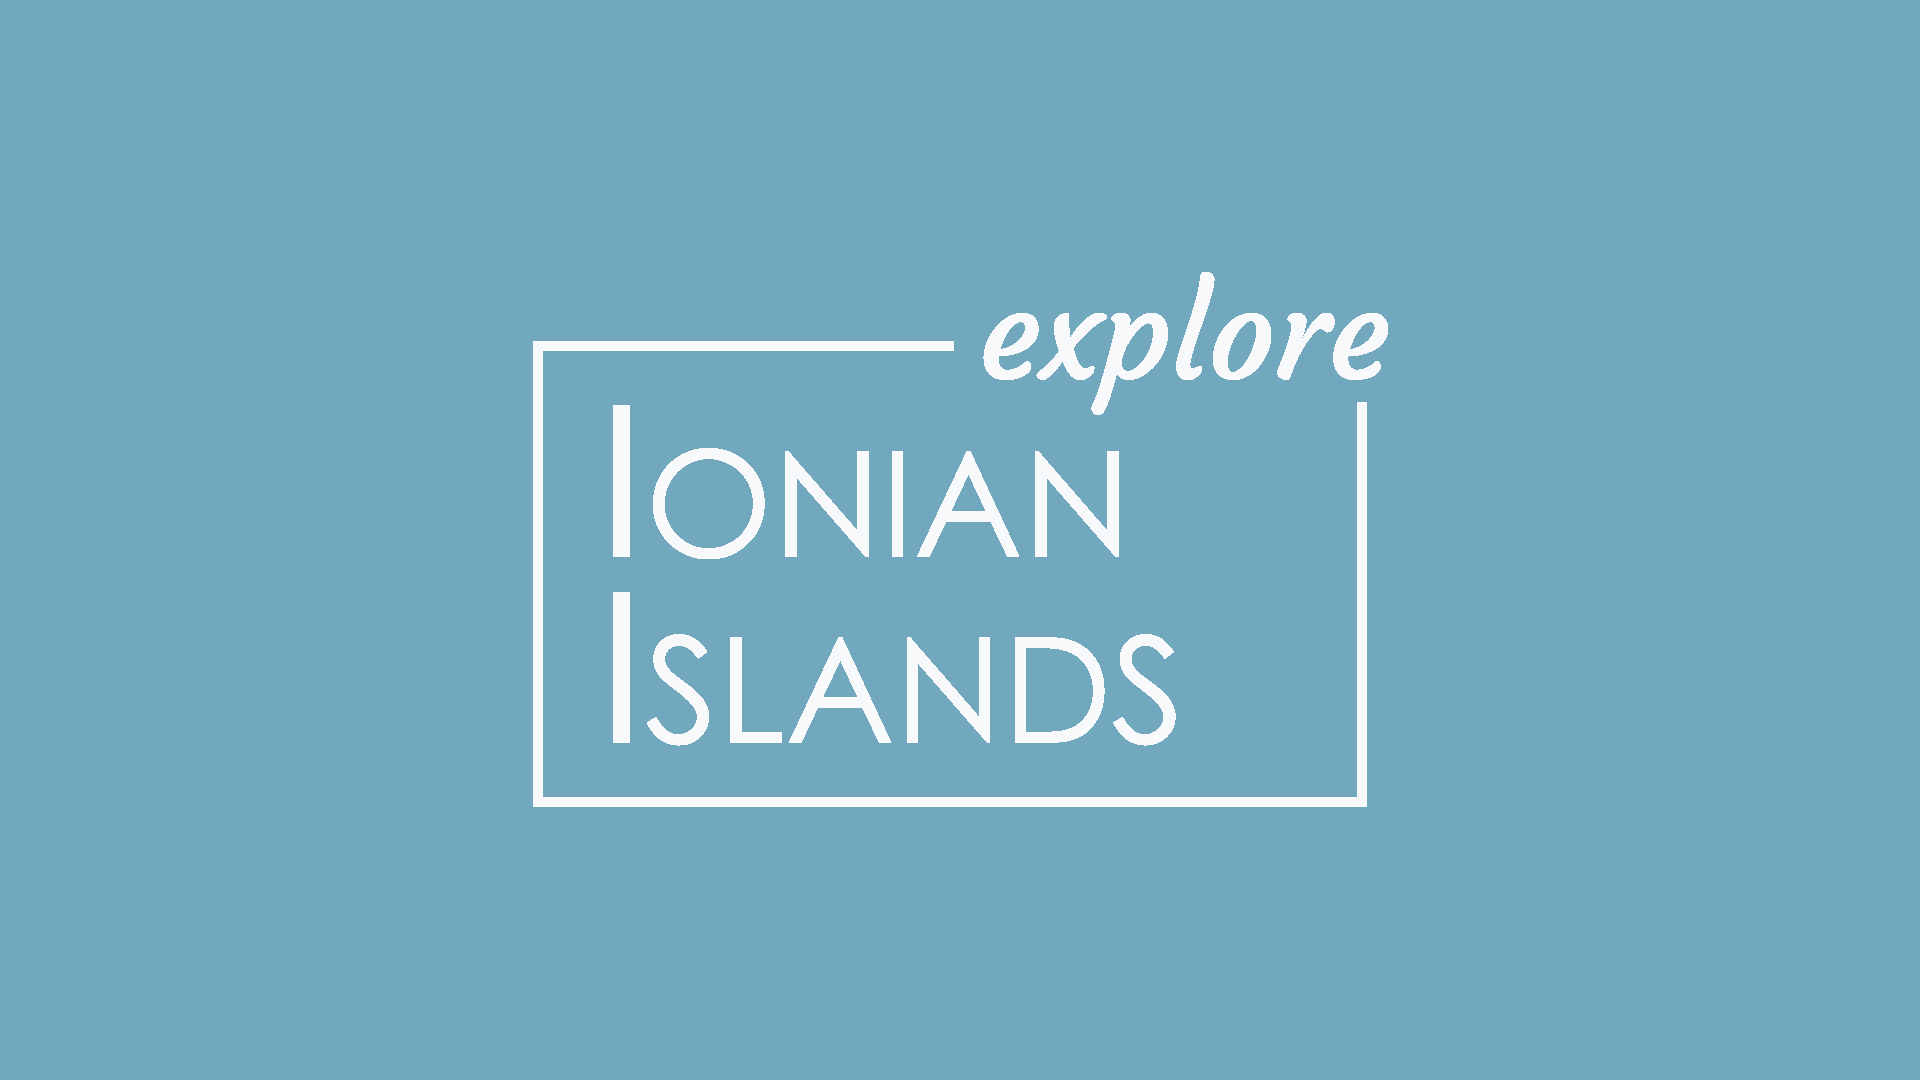 Explore Ionian Islands Social Media